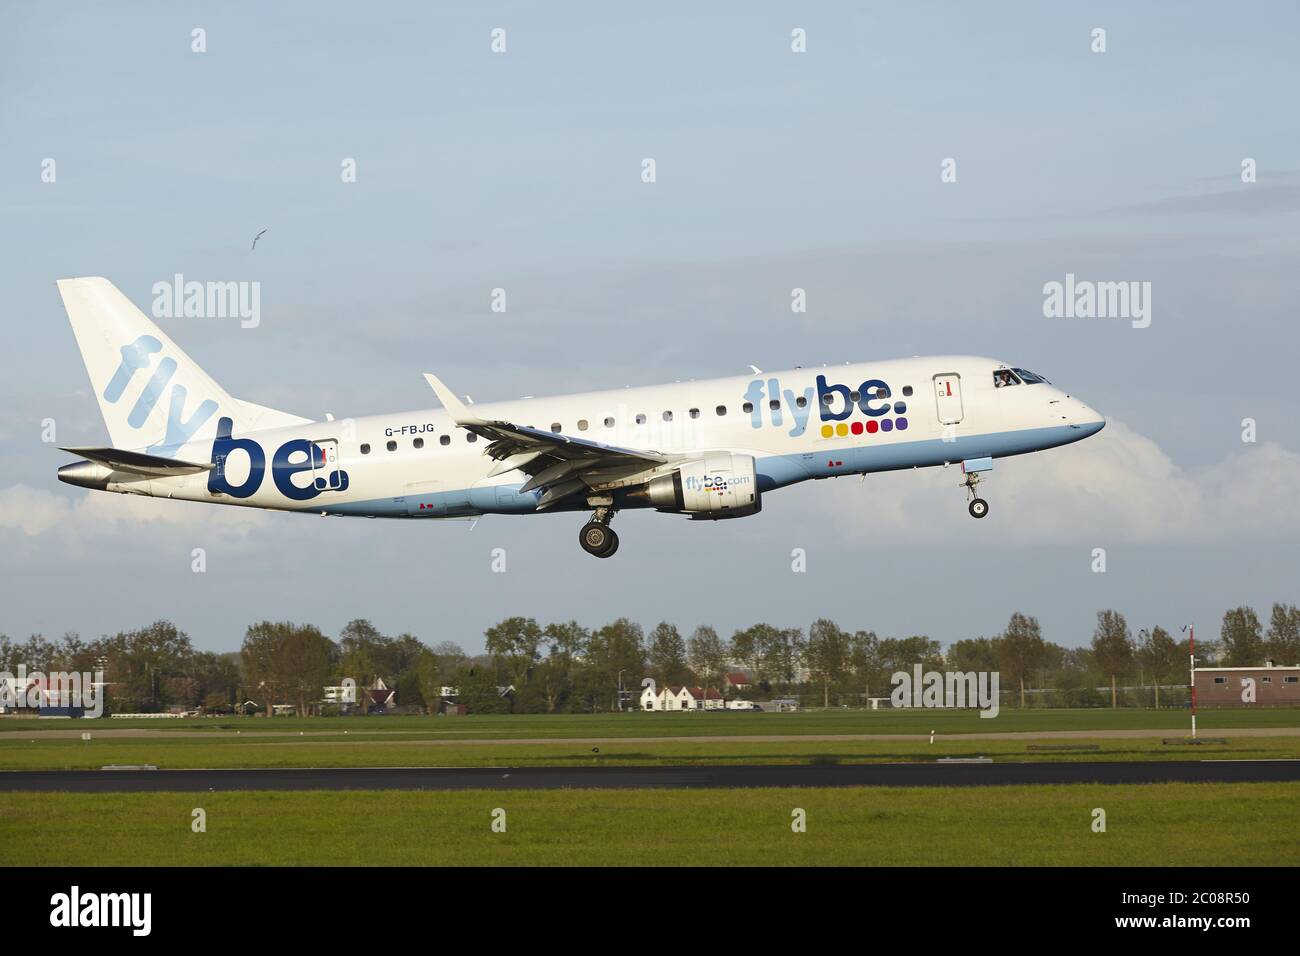 Aeroporto Schiphol di Amsterdam - Embraer ERJ-175 da Flybe Foto Stock